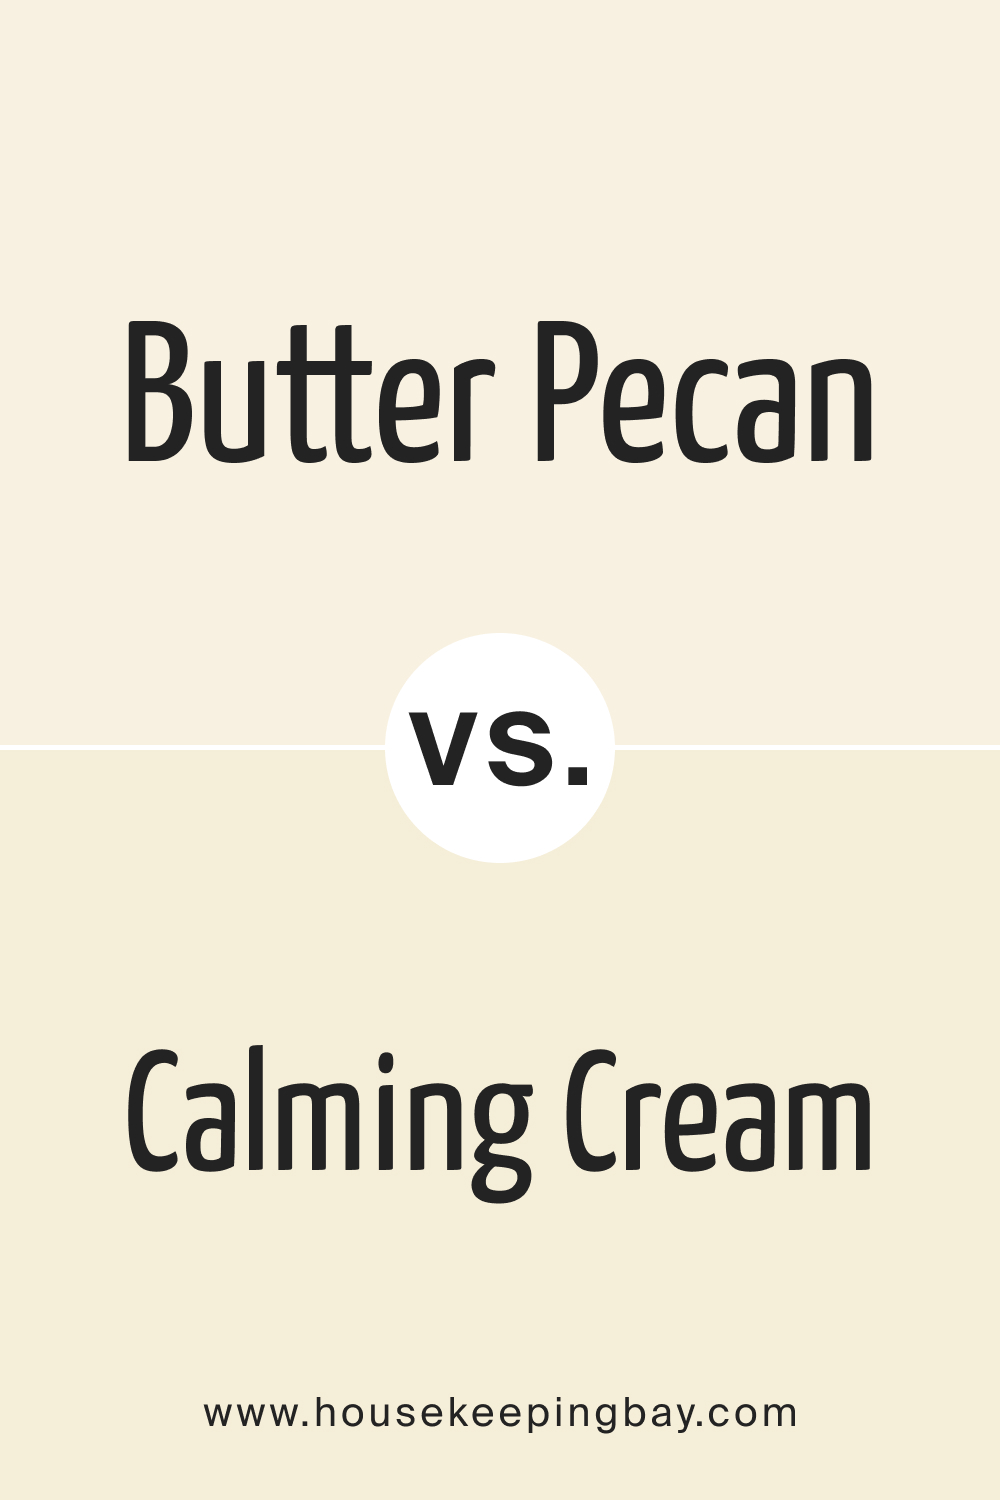 Butter Pecan OC 89 vs. OC 105 Calming Cream